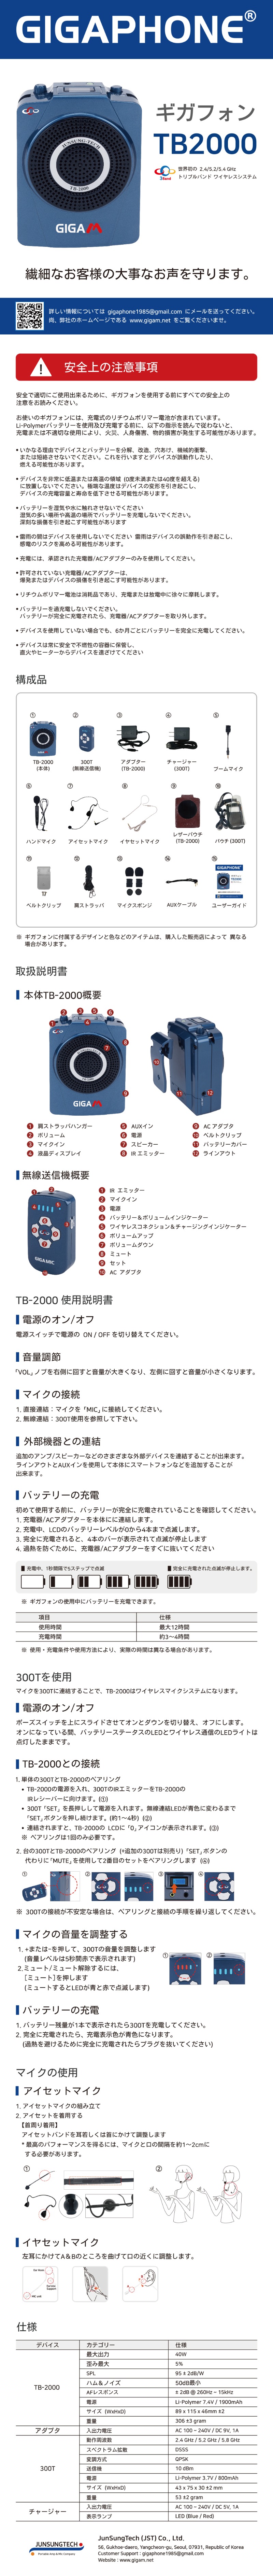 TB-2000_m_JP.jpg